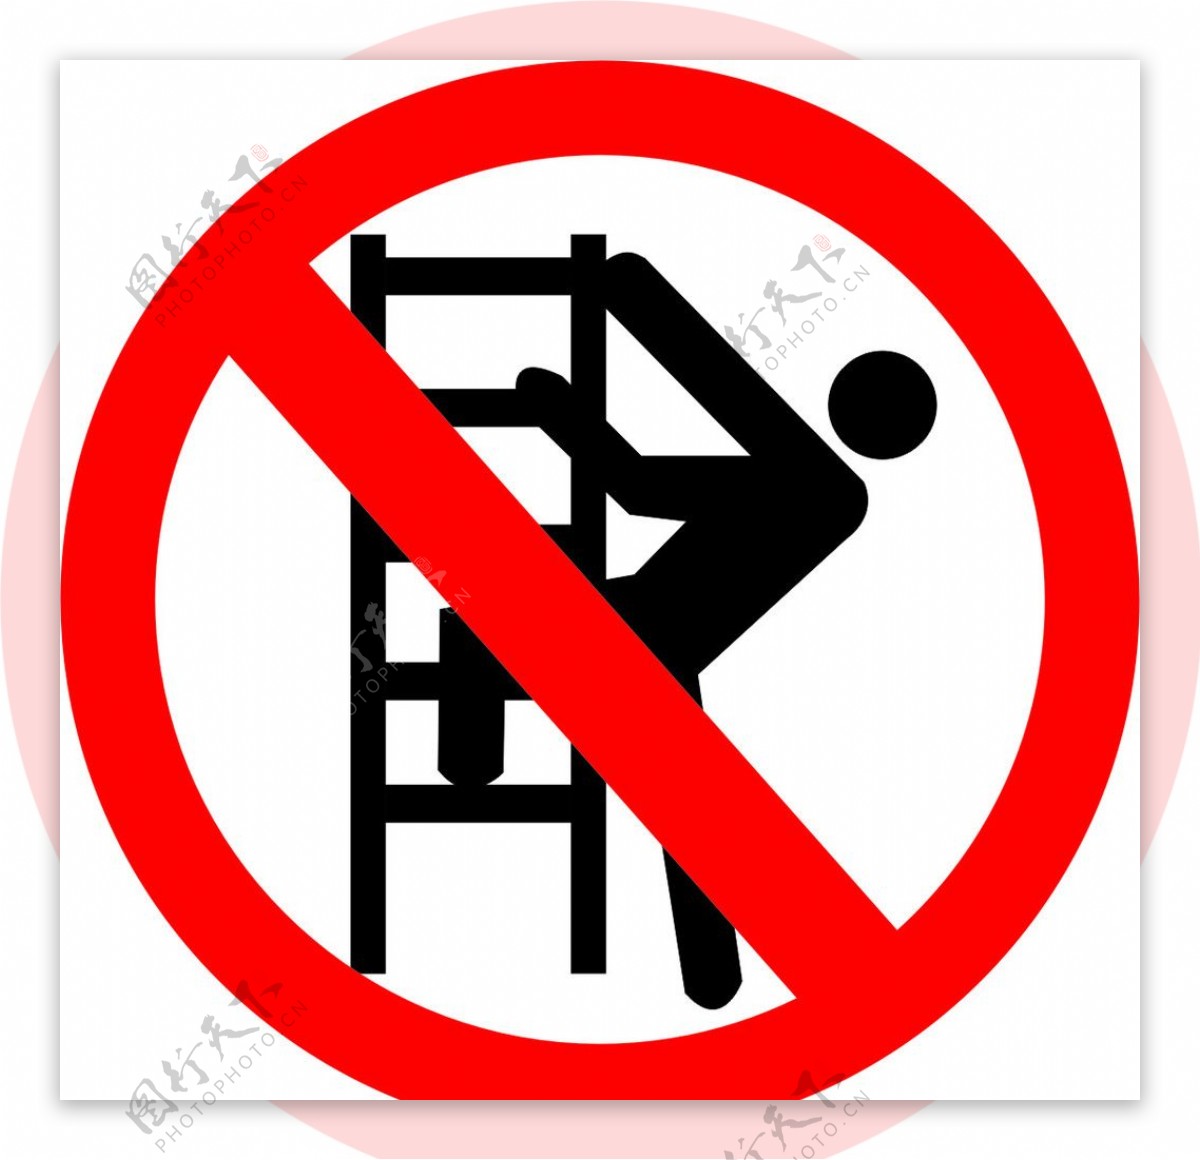 禁止攀爬标志图片